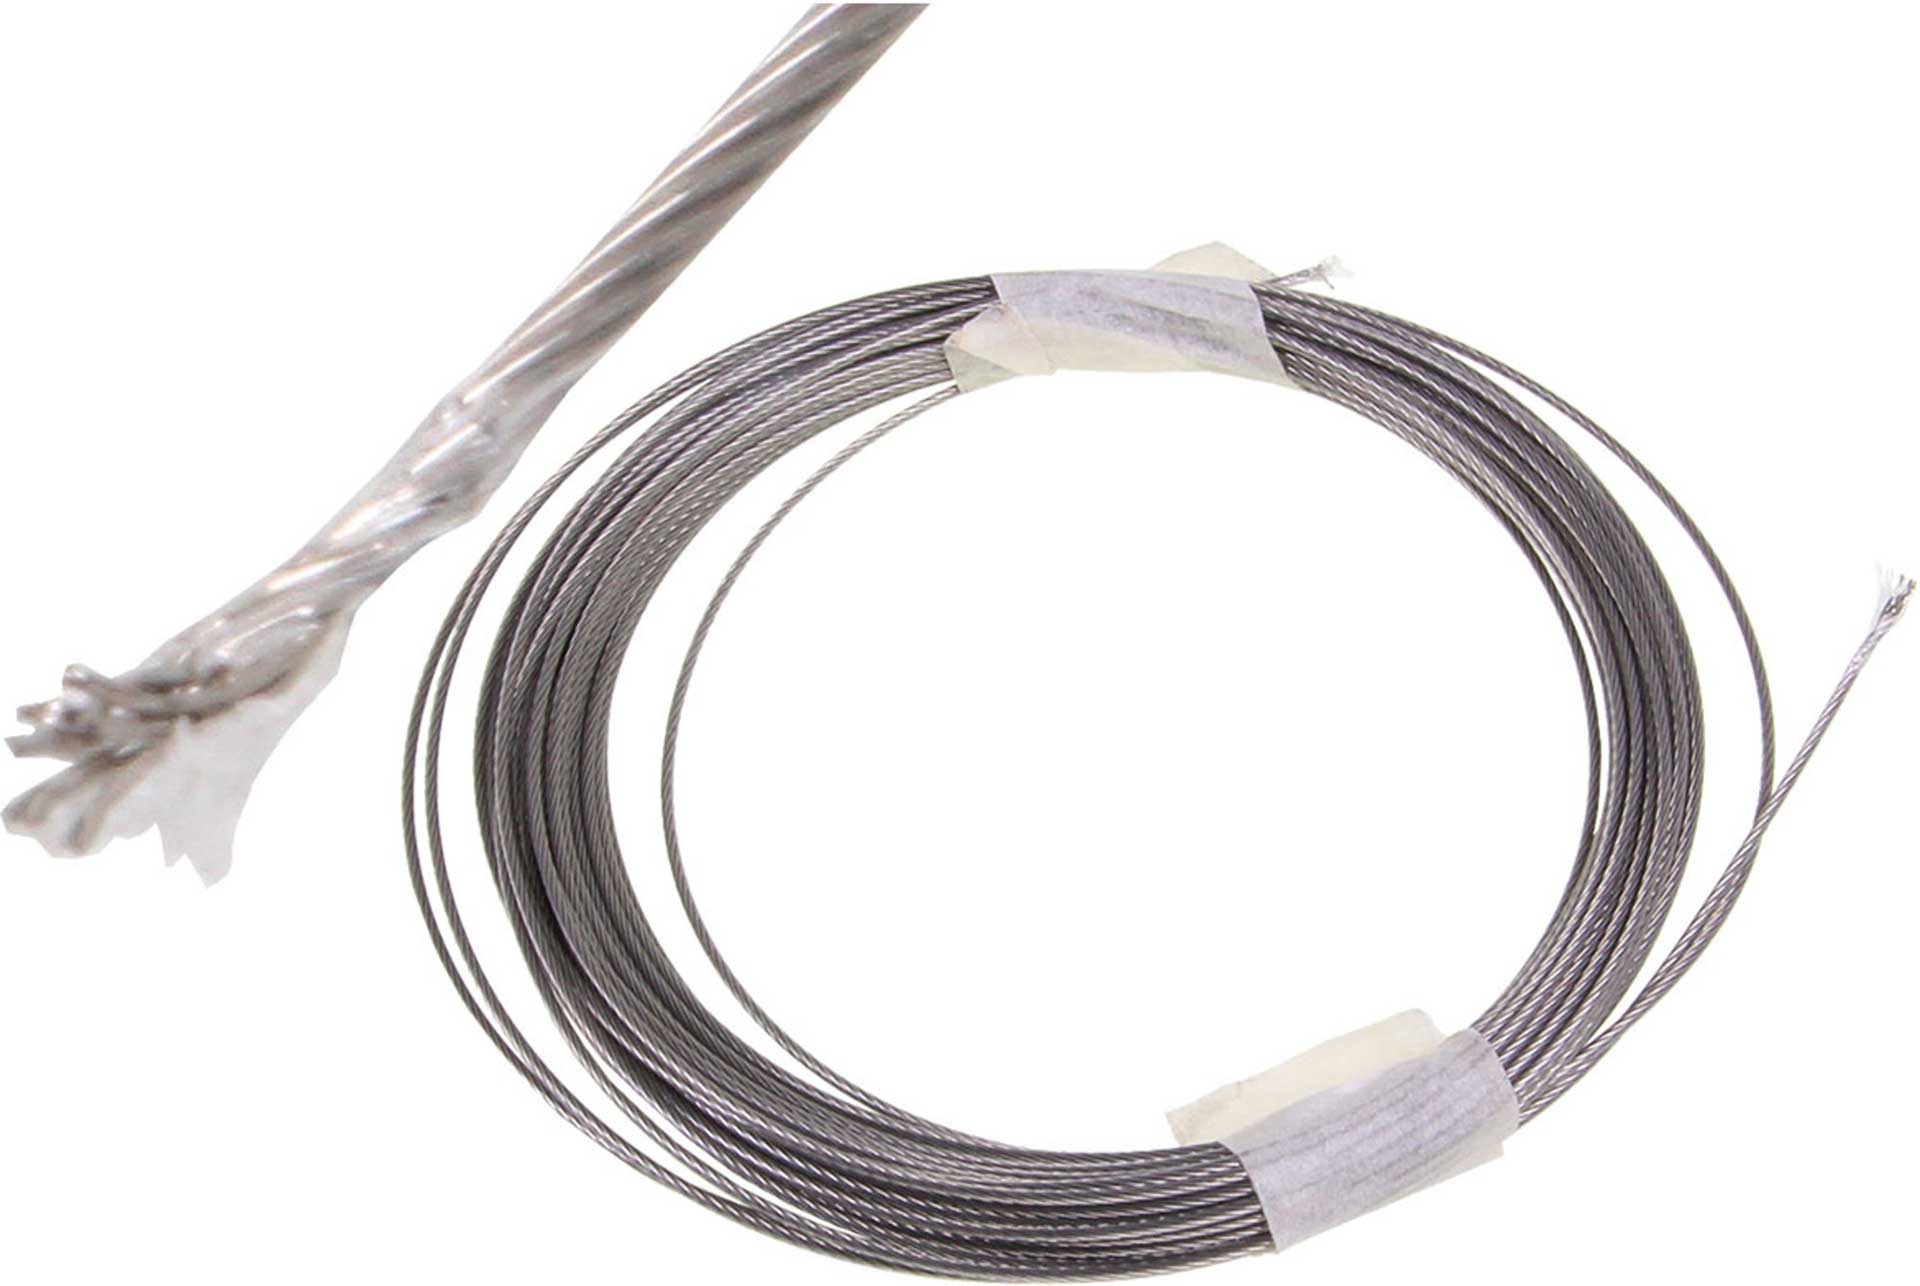 MODELLBAU LINDINGER Câble acier 1,0mm gainé nylon 100 mètre, naturel, 80,6KG de traction maximale